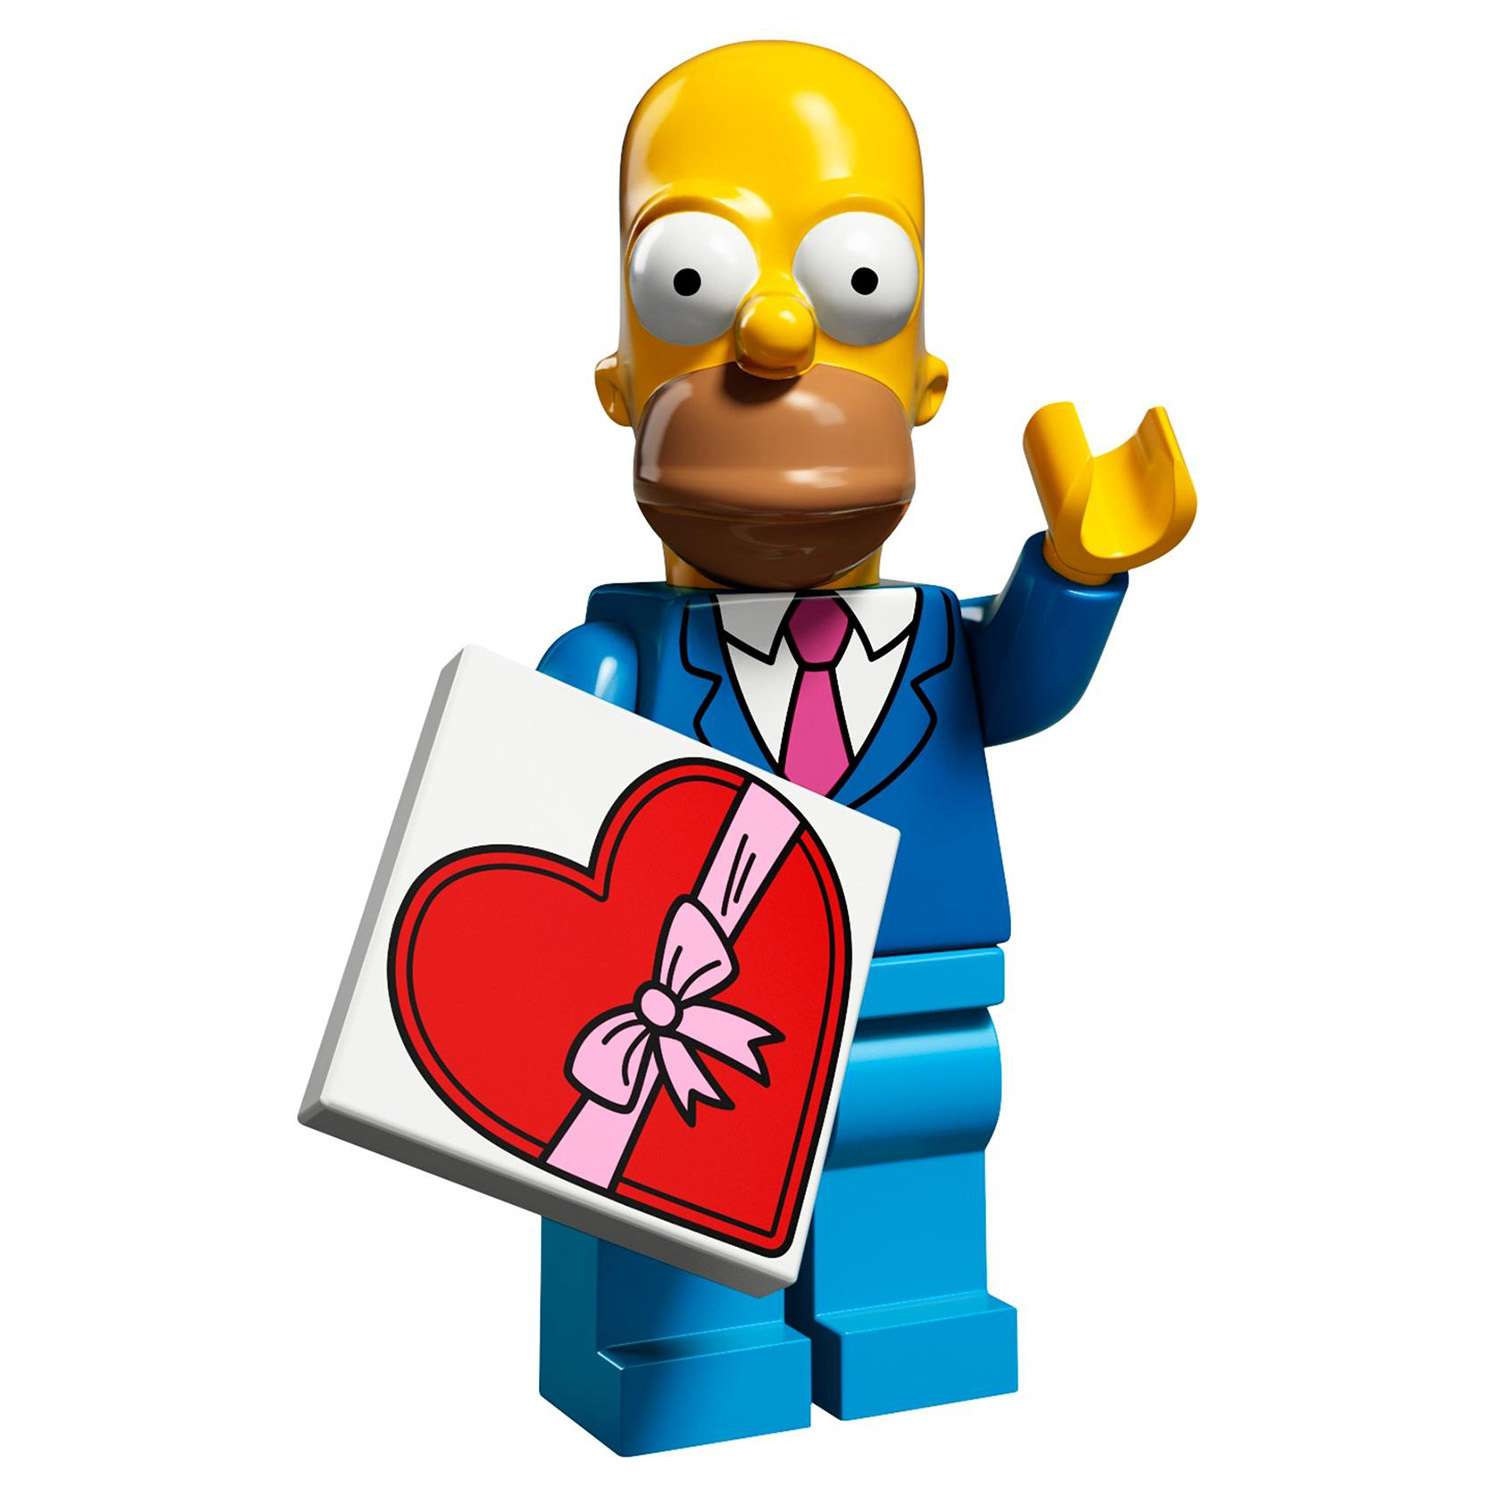 Конструктор LEGO Minifigures Минифигурки LEGO® Серия «Симпсоны» 2.0 (71009) - фото 6